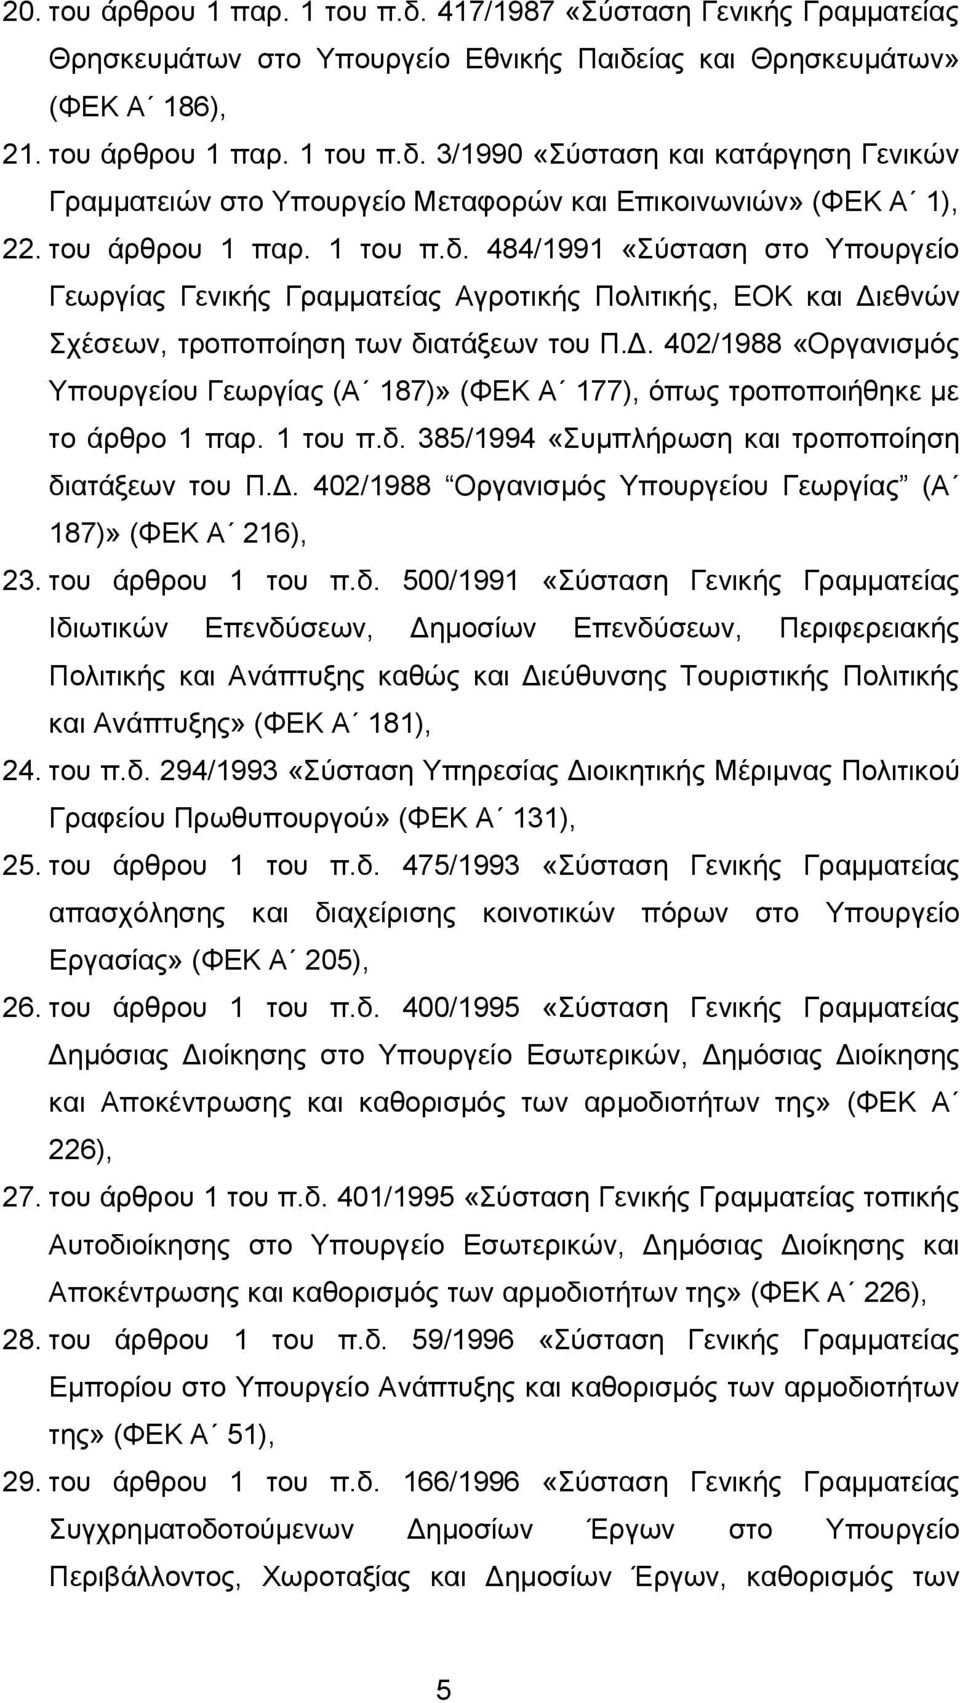 εθνών Σχέσεων, τροποποίηση των διατάξεων του Π.Δ. 402/1988 «Οργανισμός Υπουργείου Γεωργίας (Α 187)» (ΦΕΚ Α 177), όπως τροποποιήθηκε με το άρθρο 1 παρ. 1 του π.δ. 385/1994 «Συμπλήρωση και τροποποίηση διατάξεων του Π.